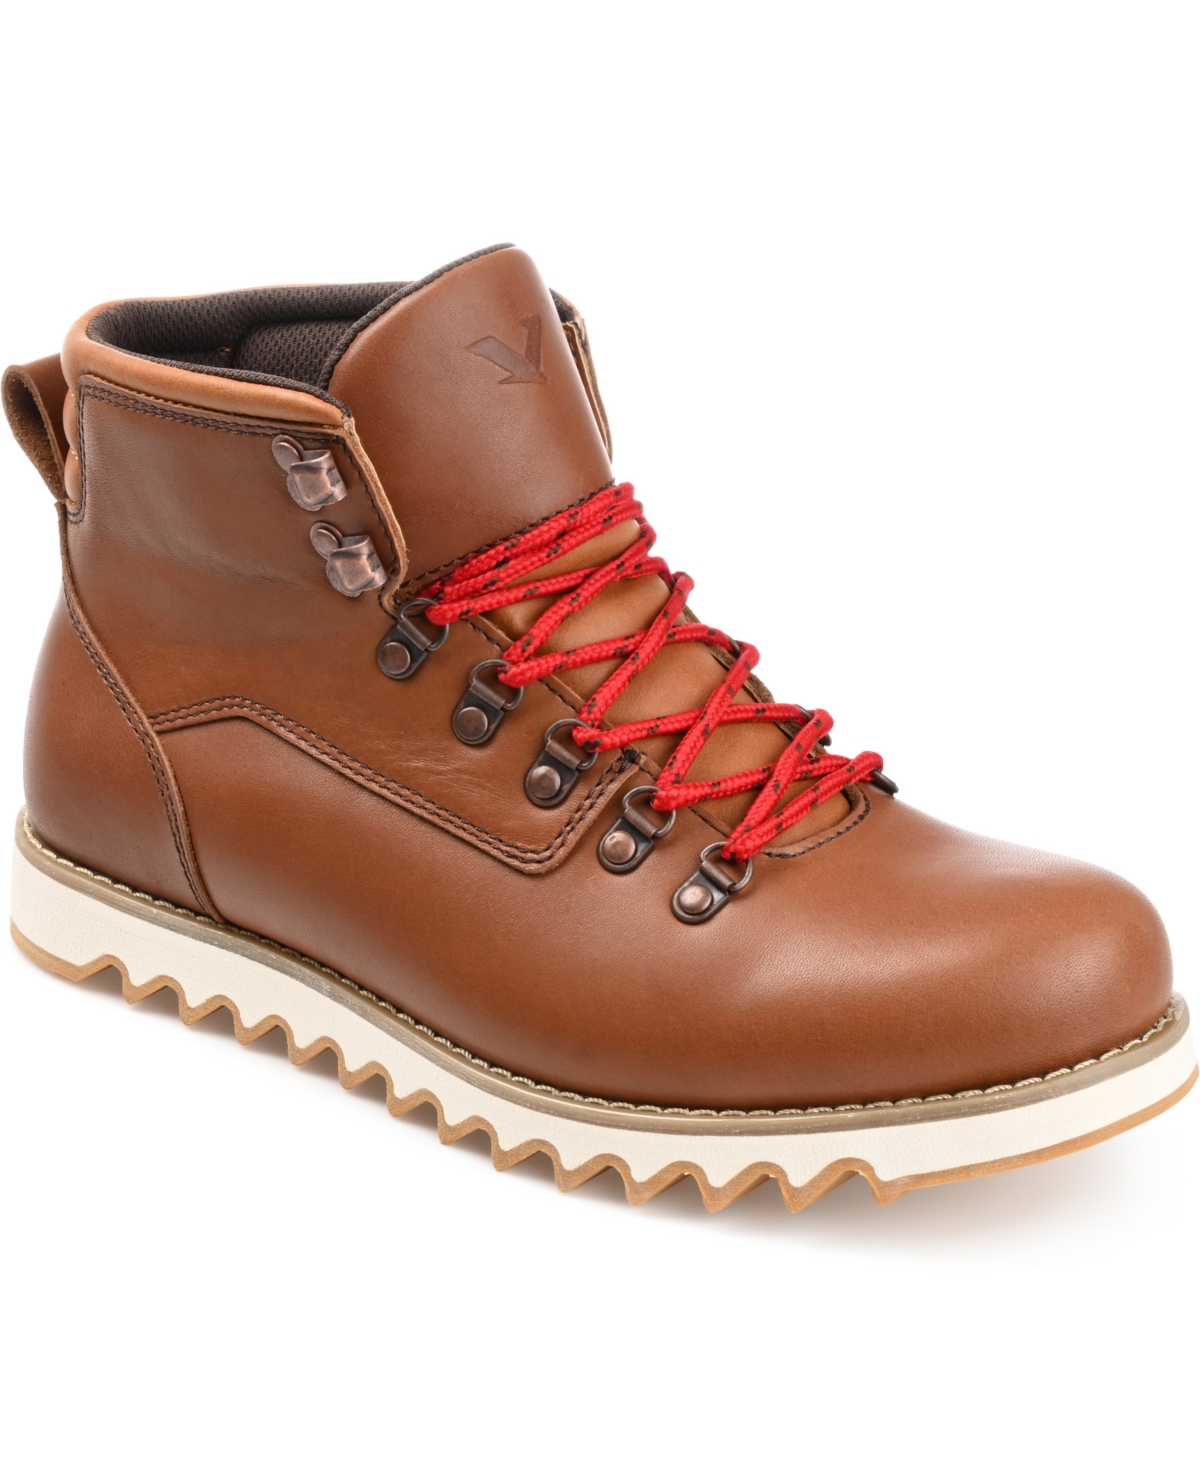 Men's Badlands Ankle Boots - Brown